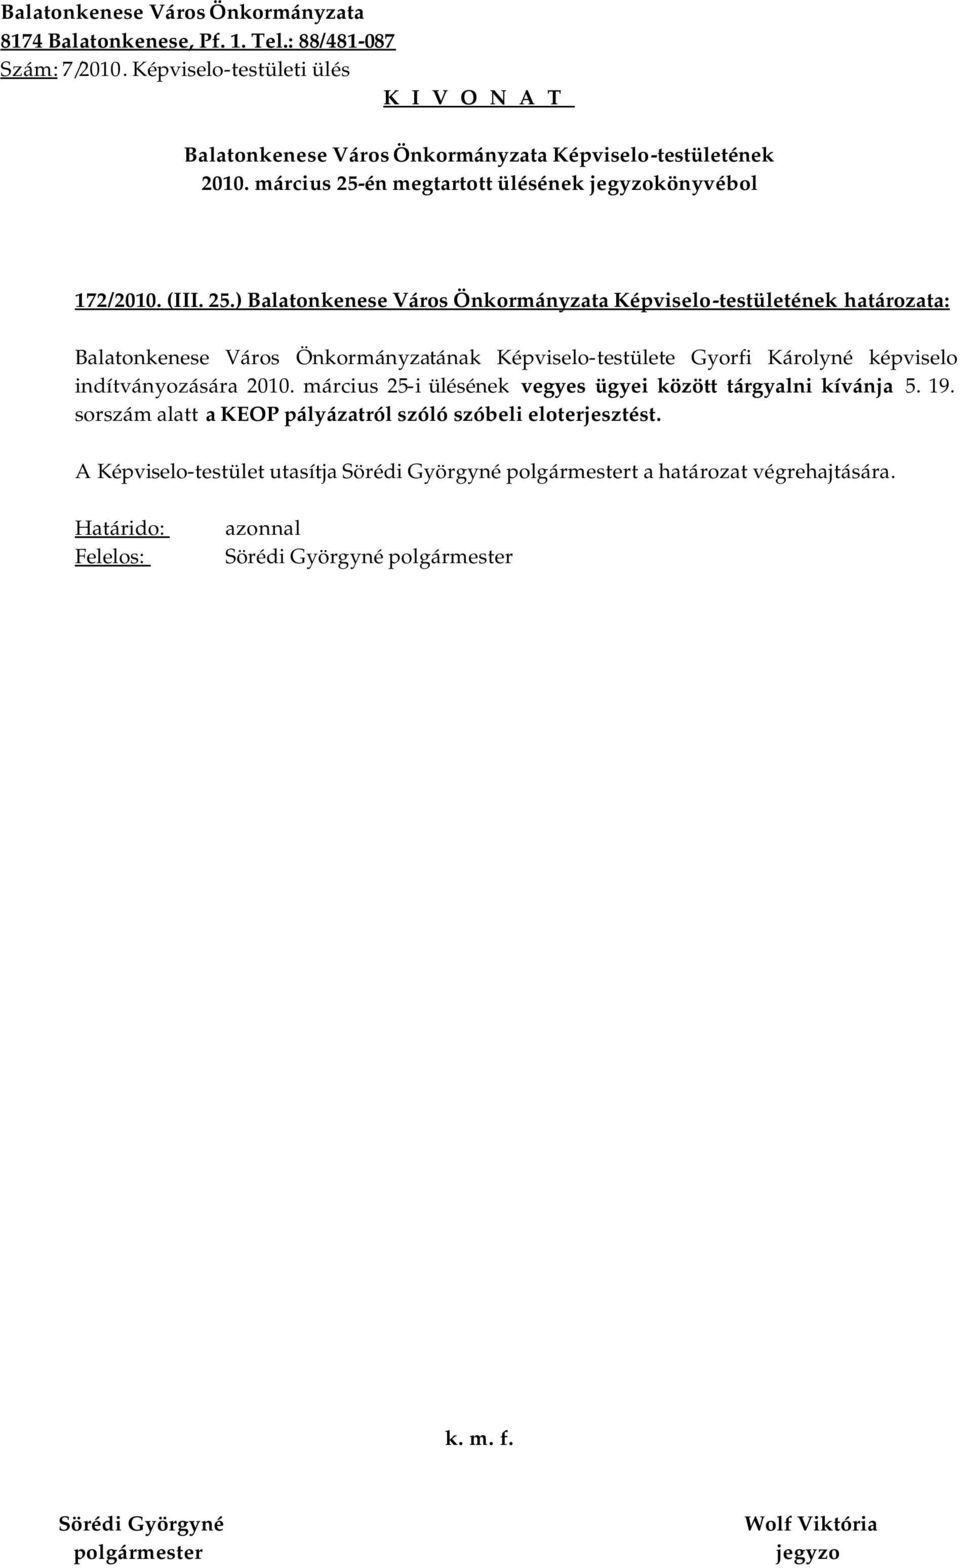 ) határozata: Balatonkenese Város Önkormányzatának Képviselo-testülete Gyorfi Károlyné képviselo